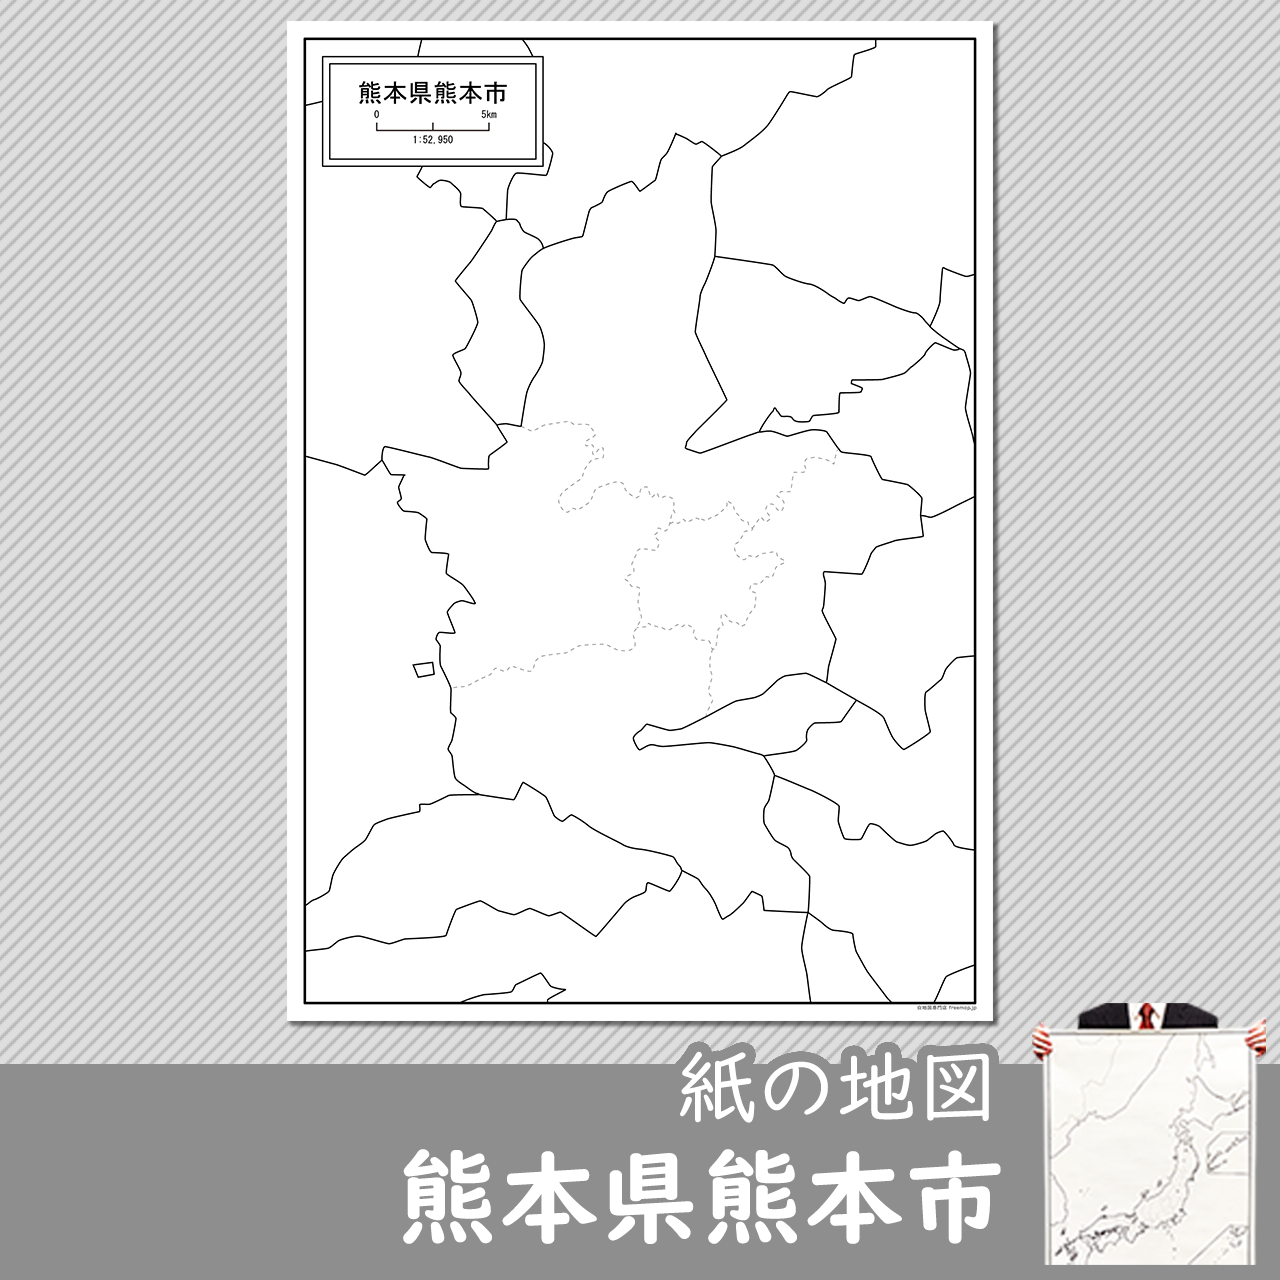 熊本市の紙の白地図のサムネイル